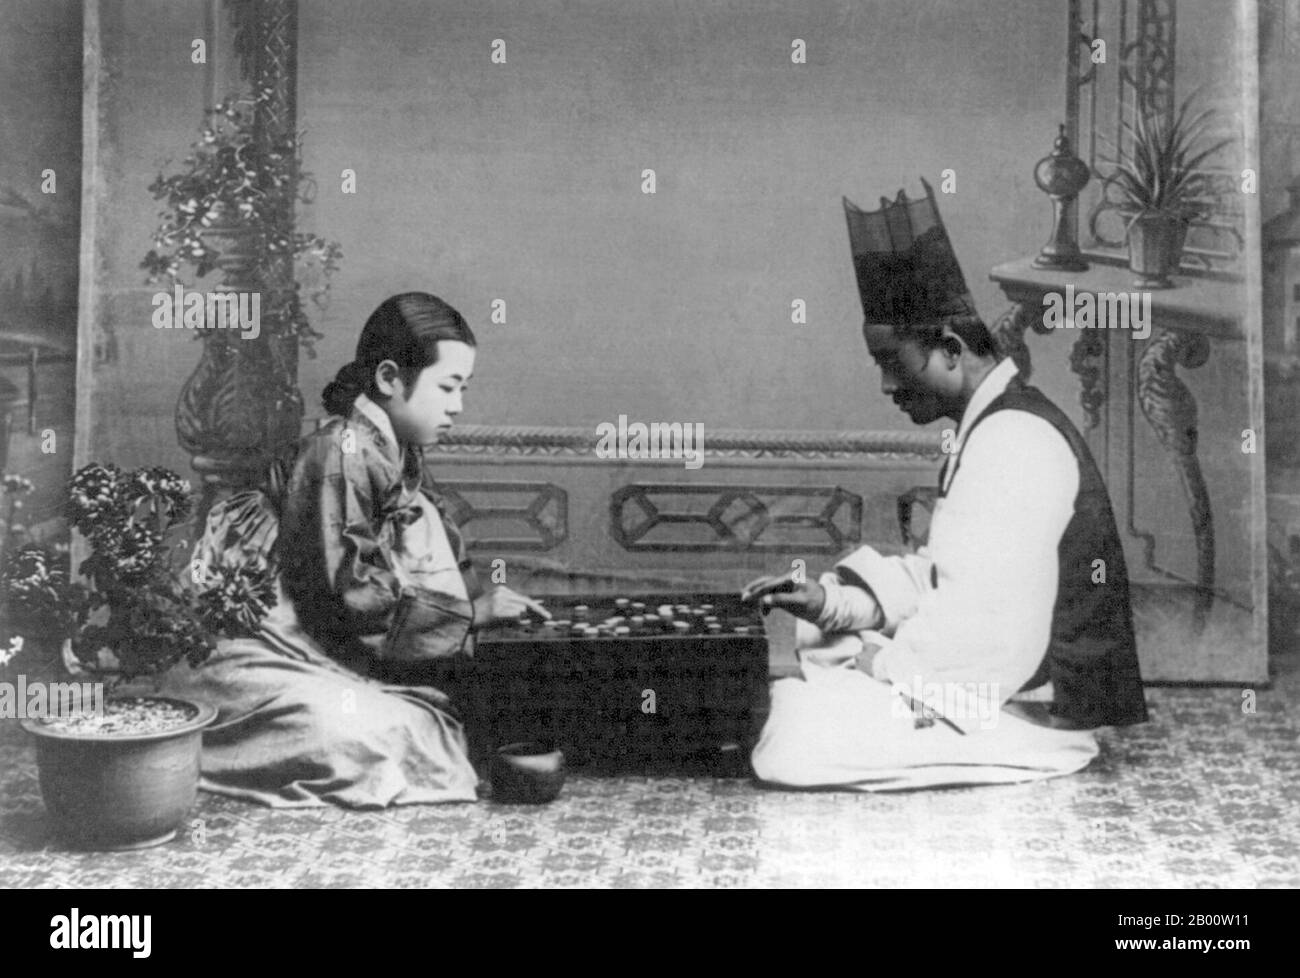 Korea: Ein Mann und eine Frau spielen ein Spiel von "baduk" oder "go", c. 1910. Go (Japanisch), bekannt als "weiqi" auf Chinesisch und "baduk" auf Koreanisch, ist ein altes Brettspiel für zwei Spieler, das trotz seiner relativ einfachen Regeln bekannt ist, reich an Strategie zu sein. Stockfoto